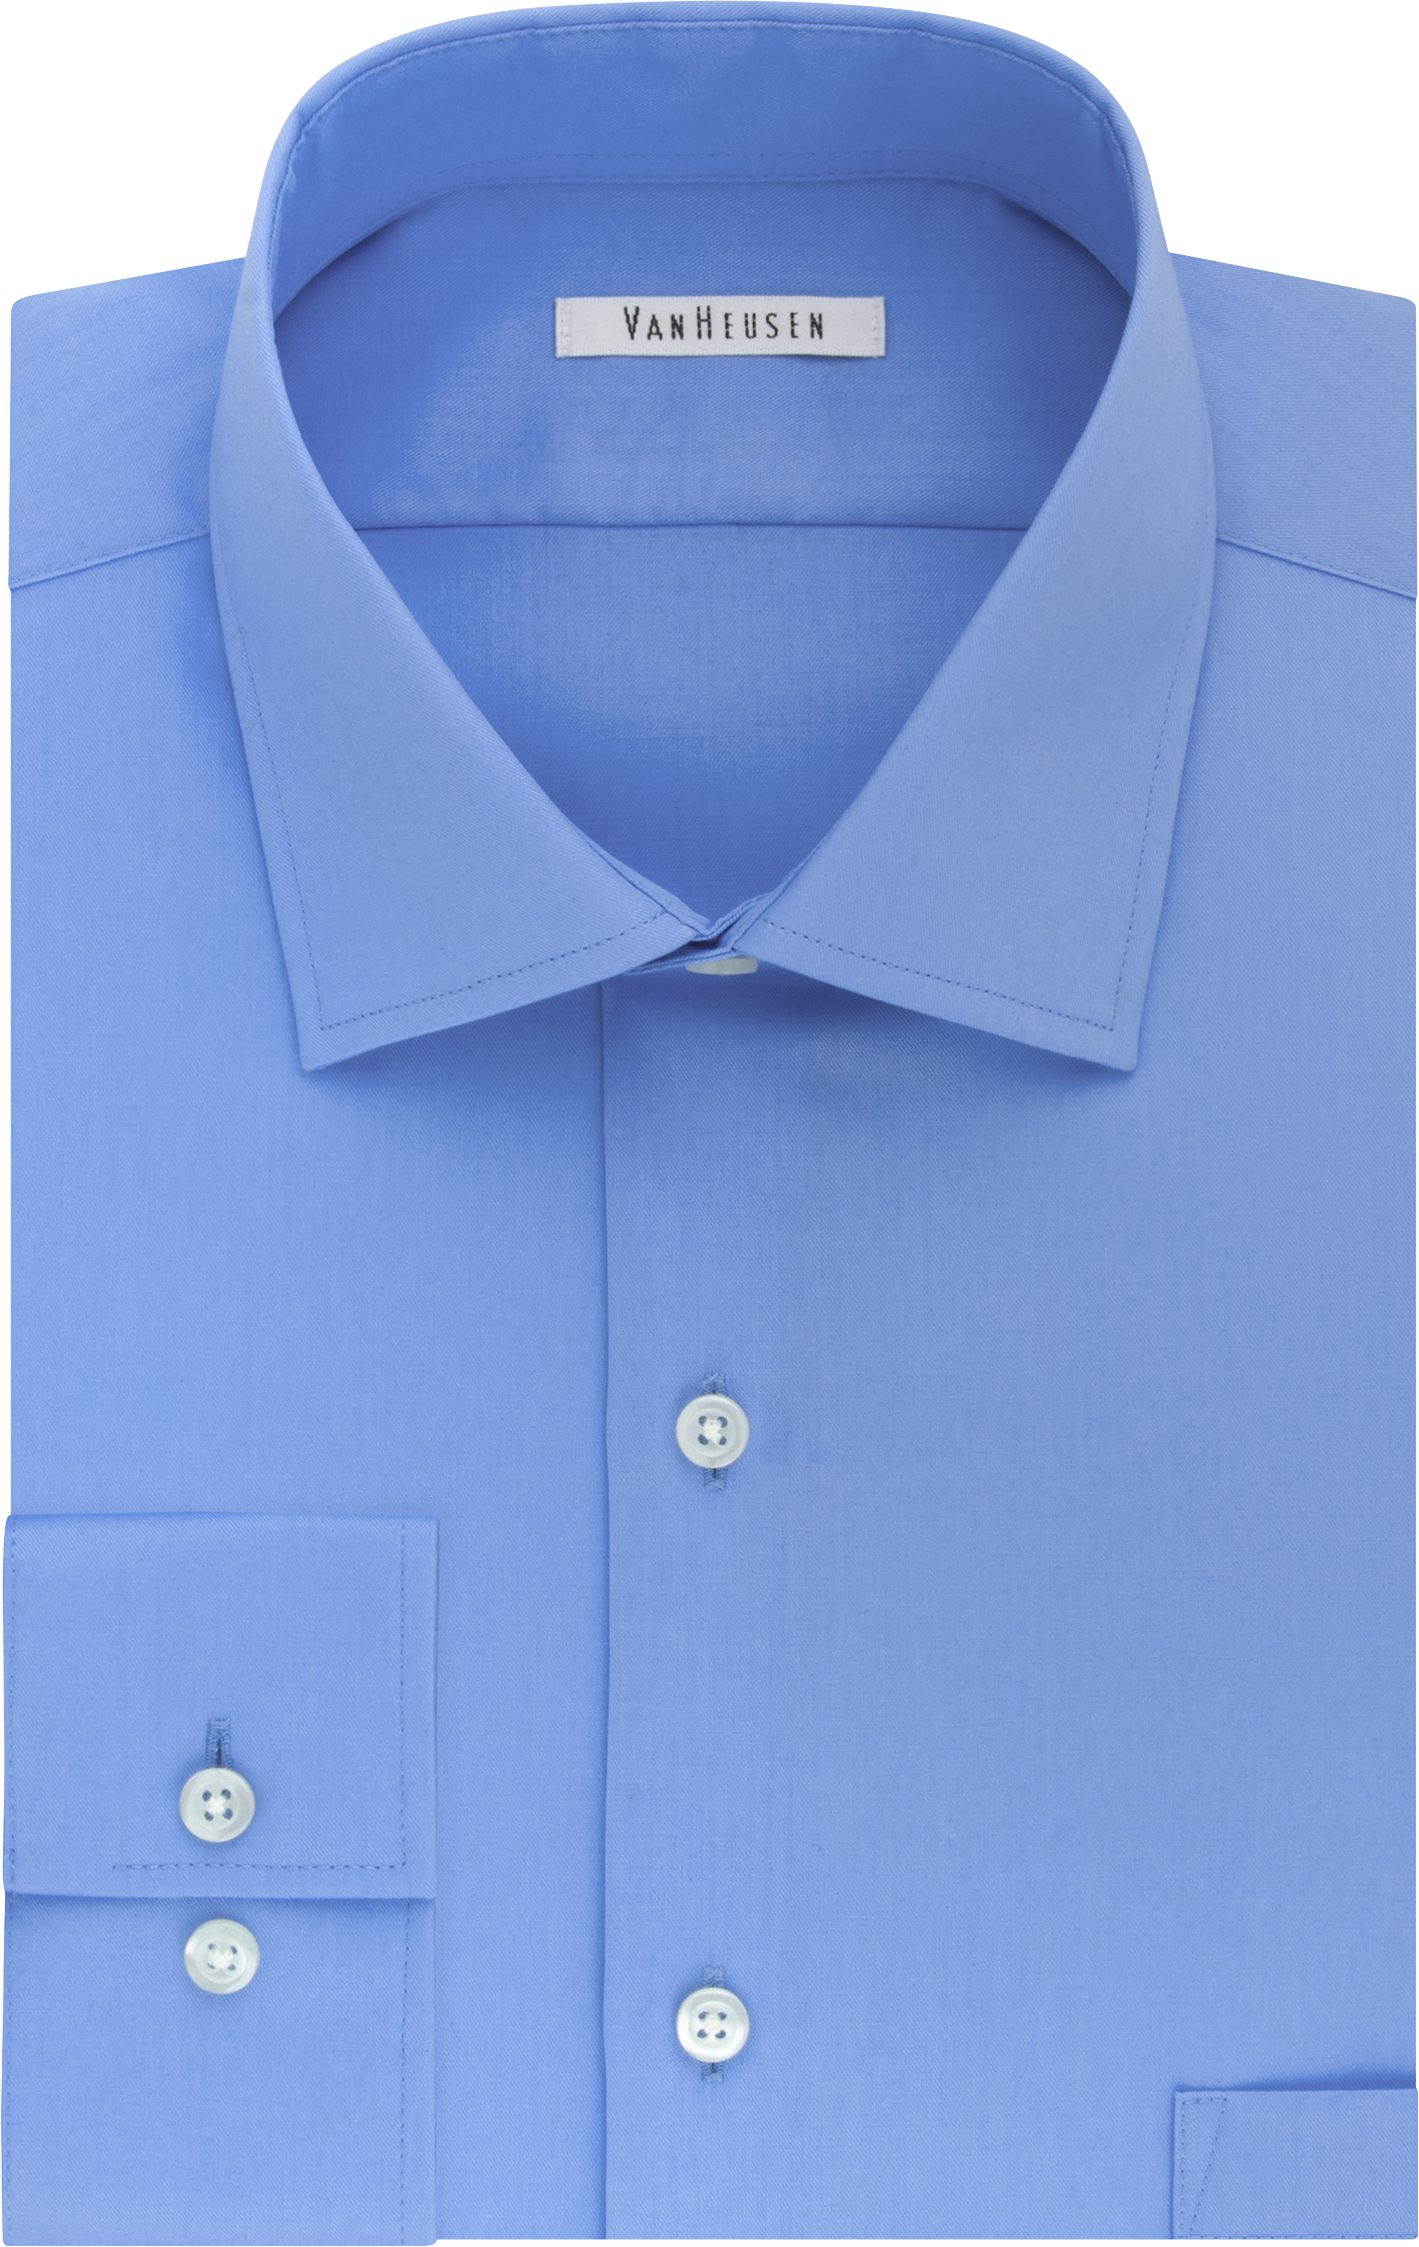 Van Heusen Flex Collar Blue Frost Regular Fit Dress Shirt - Men's Sale ...